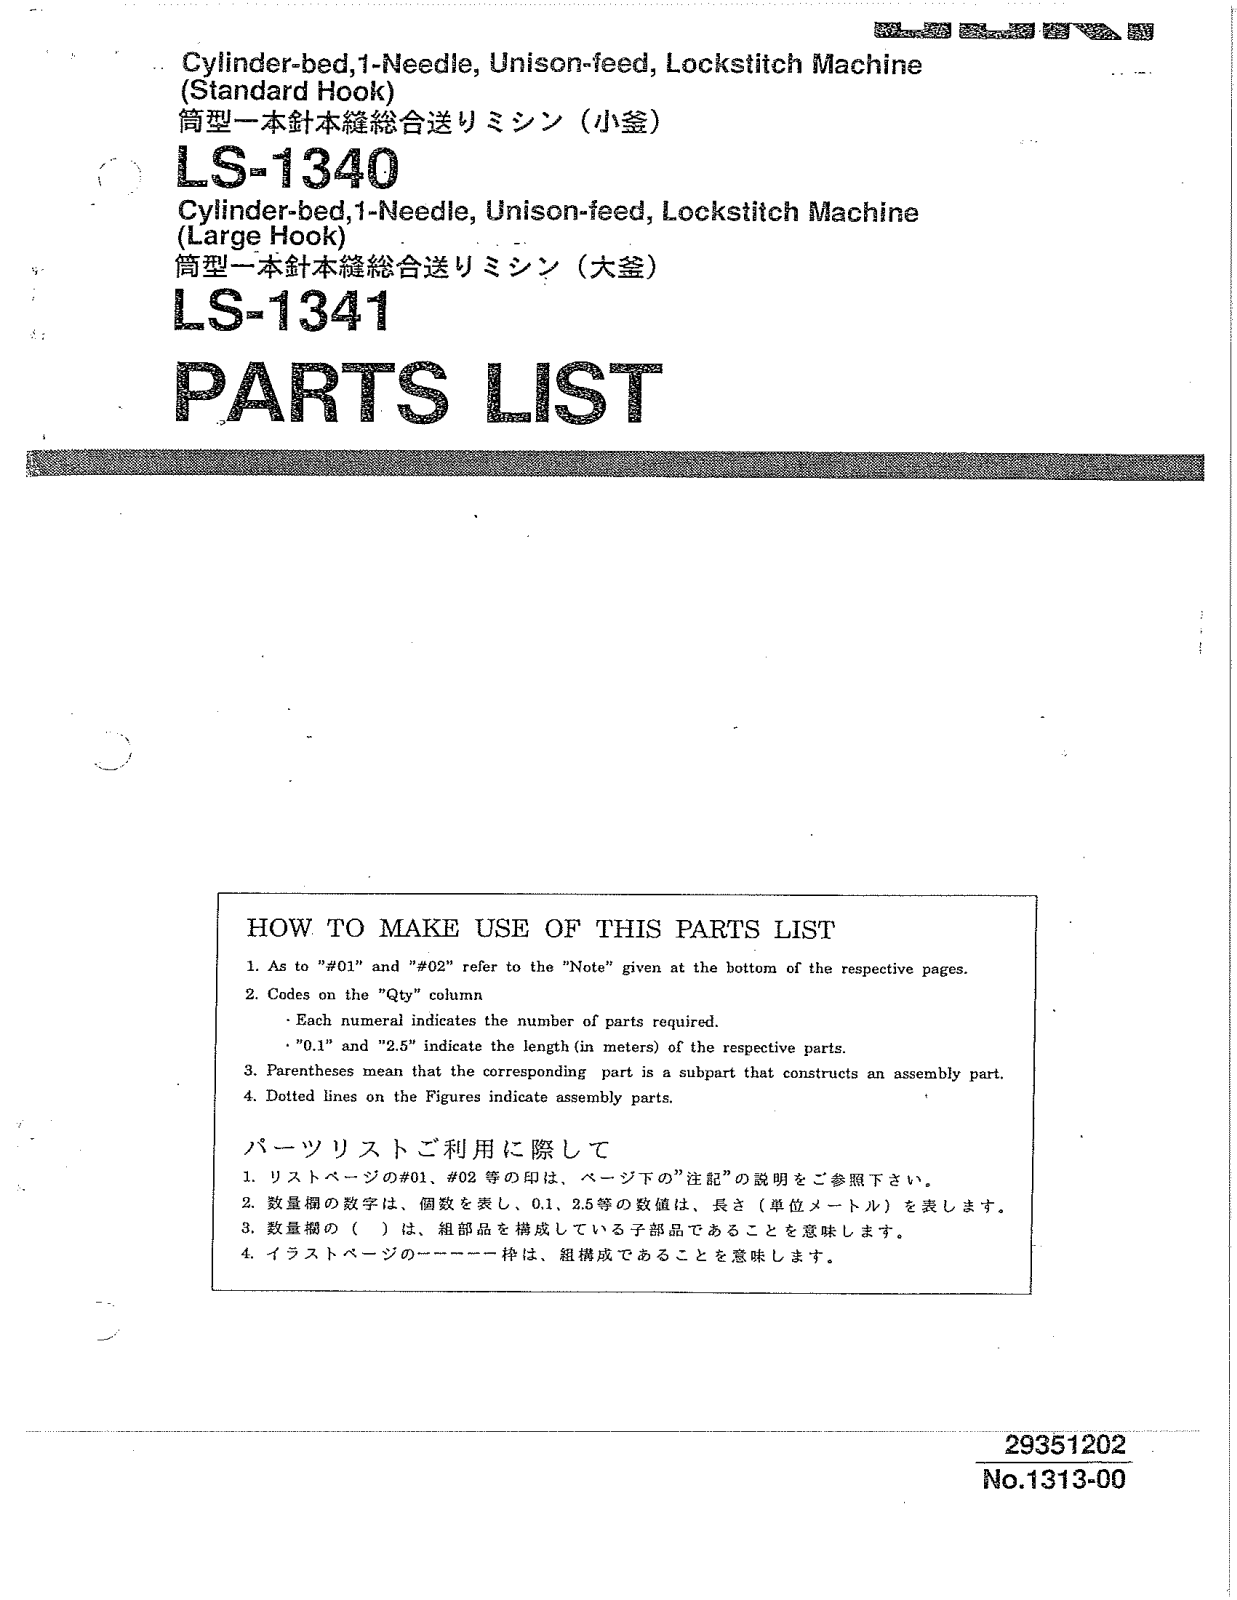 Juki LS-1340, LS-1341 Parts List